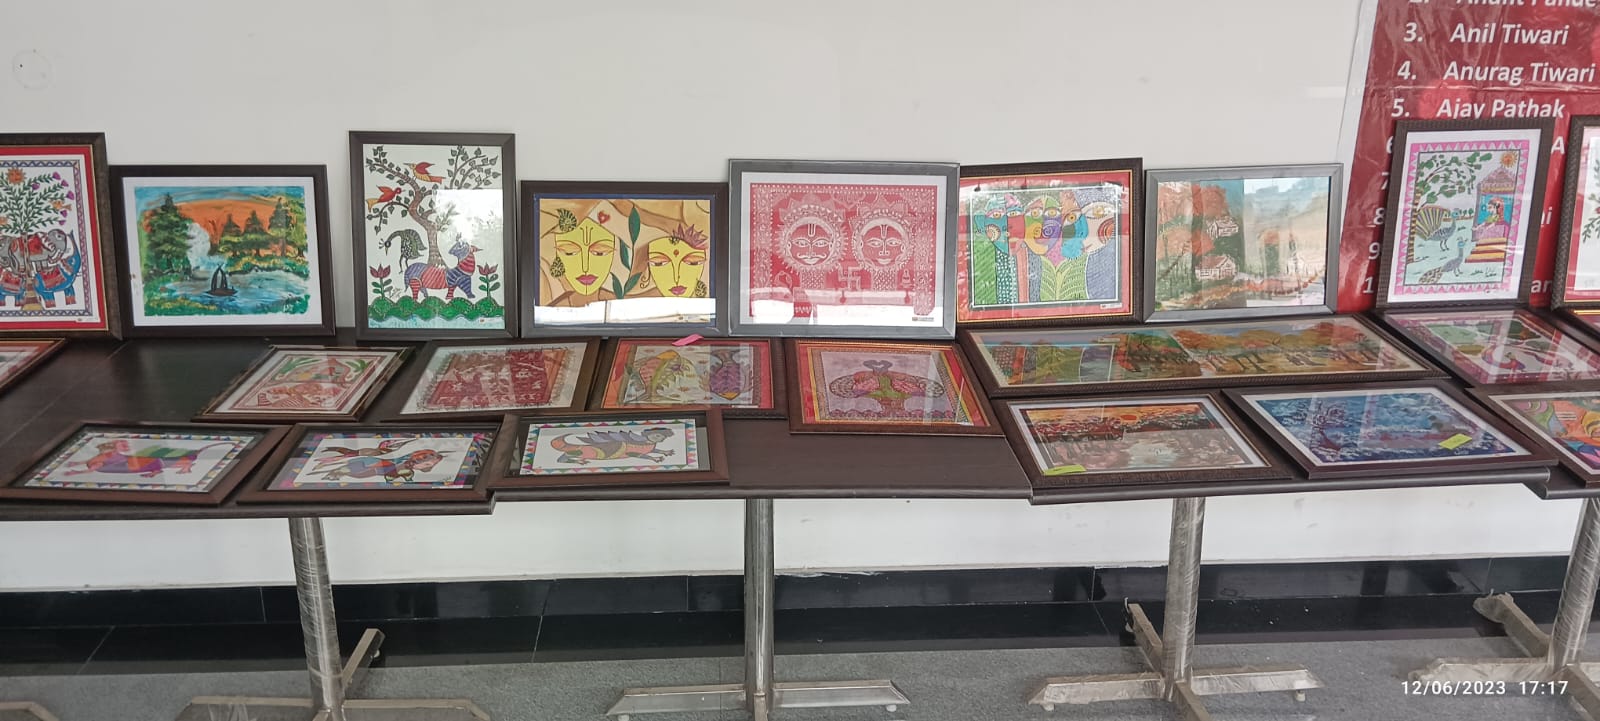  ललिता पांडे की एकल चित्रकला प्रदर्शनी का हुआ आयोजन